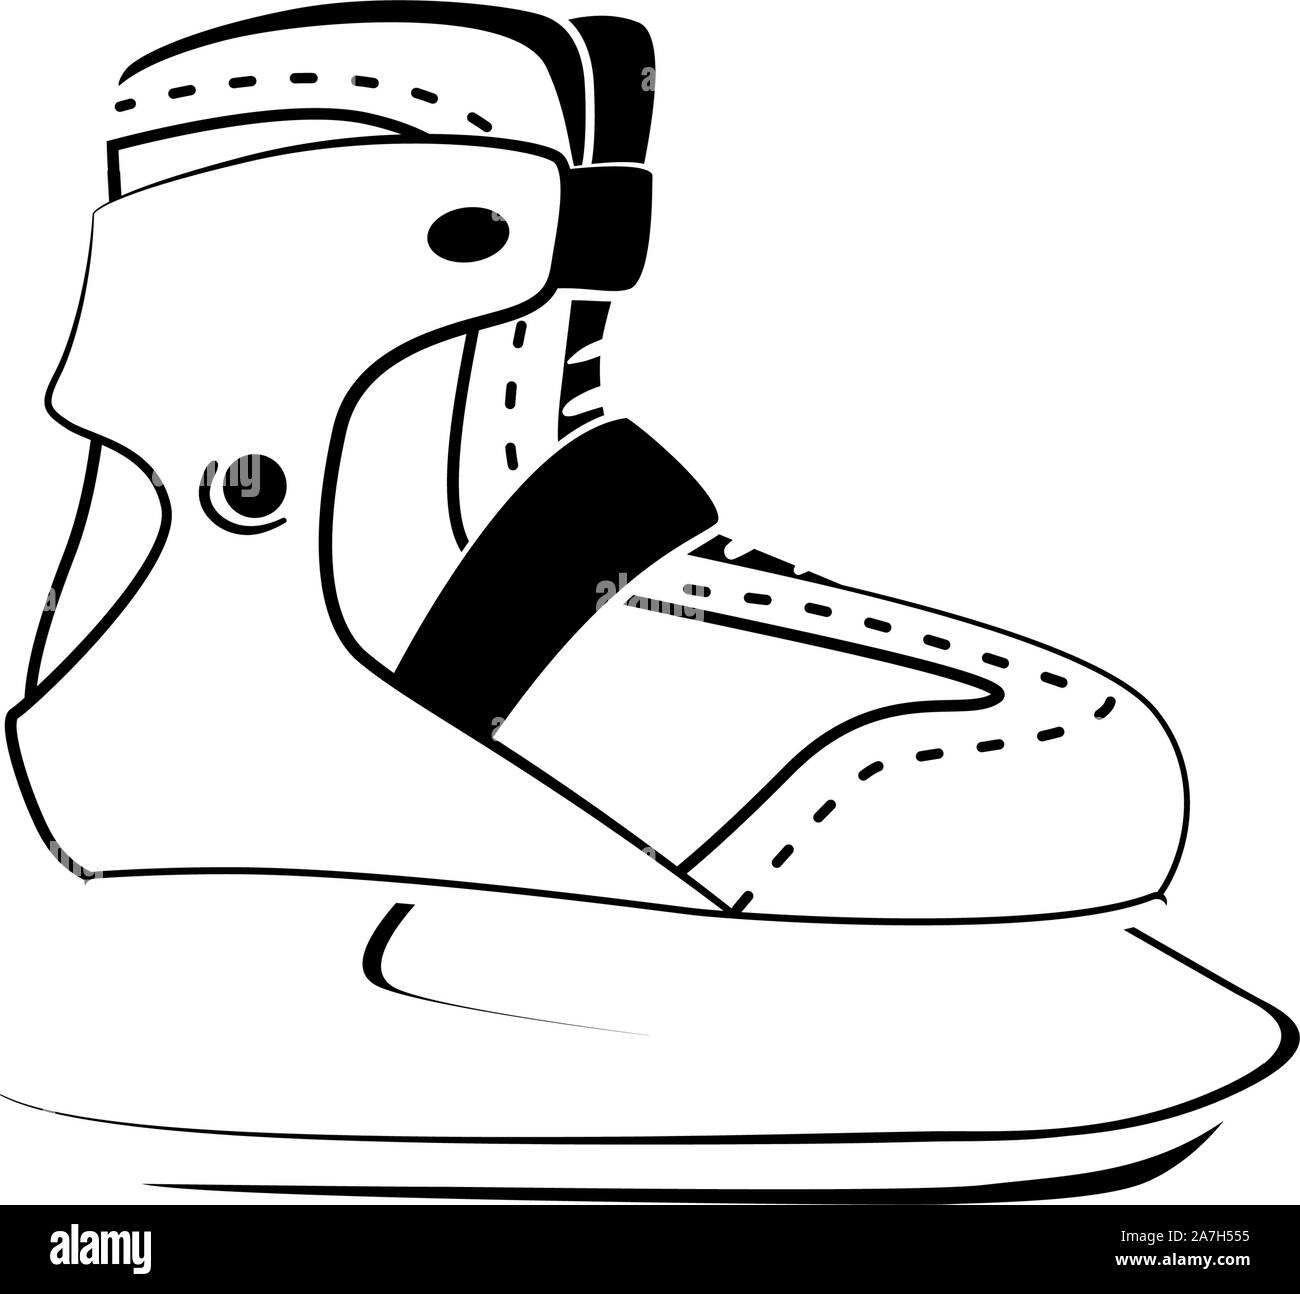 Symbole de patinage de remise en forme. Loisirs, hobby, sport d'hiver logo design. Patin à glace alignement moderne icône sur fond blanc. Fine ligne pictogramme. Vector illustration isolé. Illustration de Vecteur